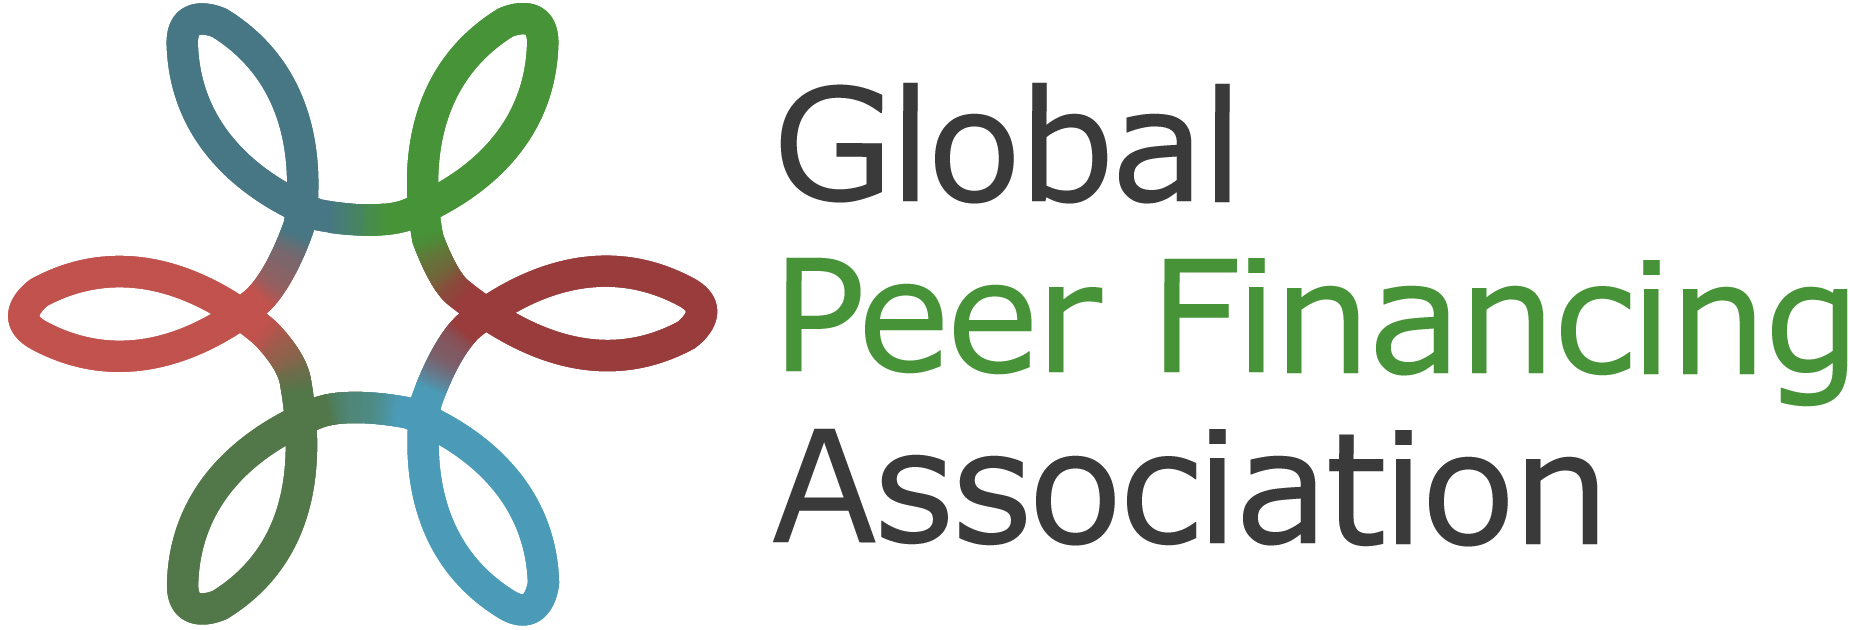 Global Peer Financing Association